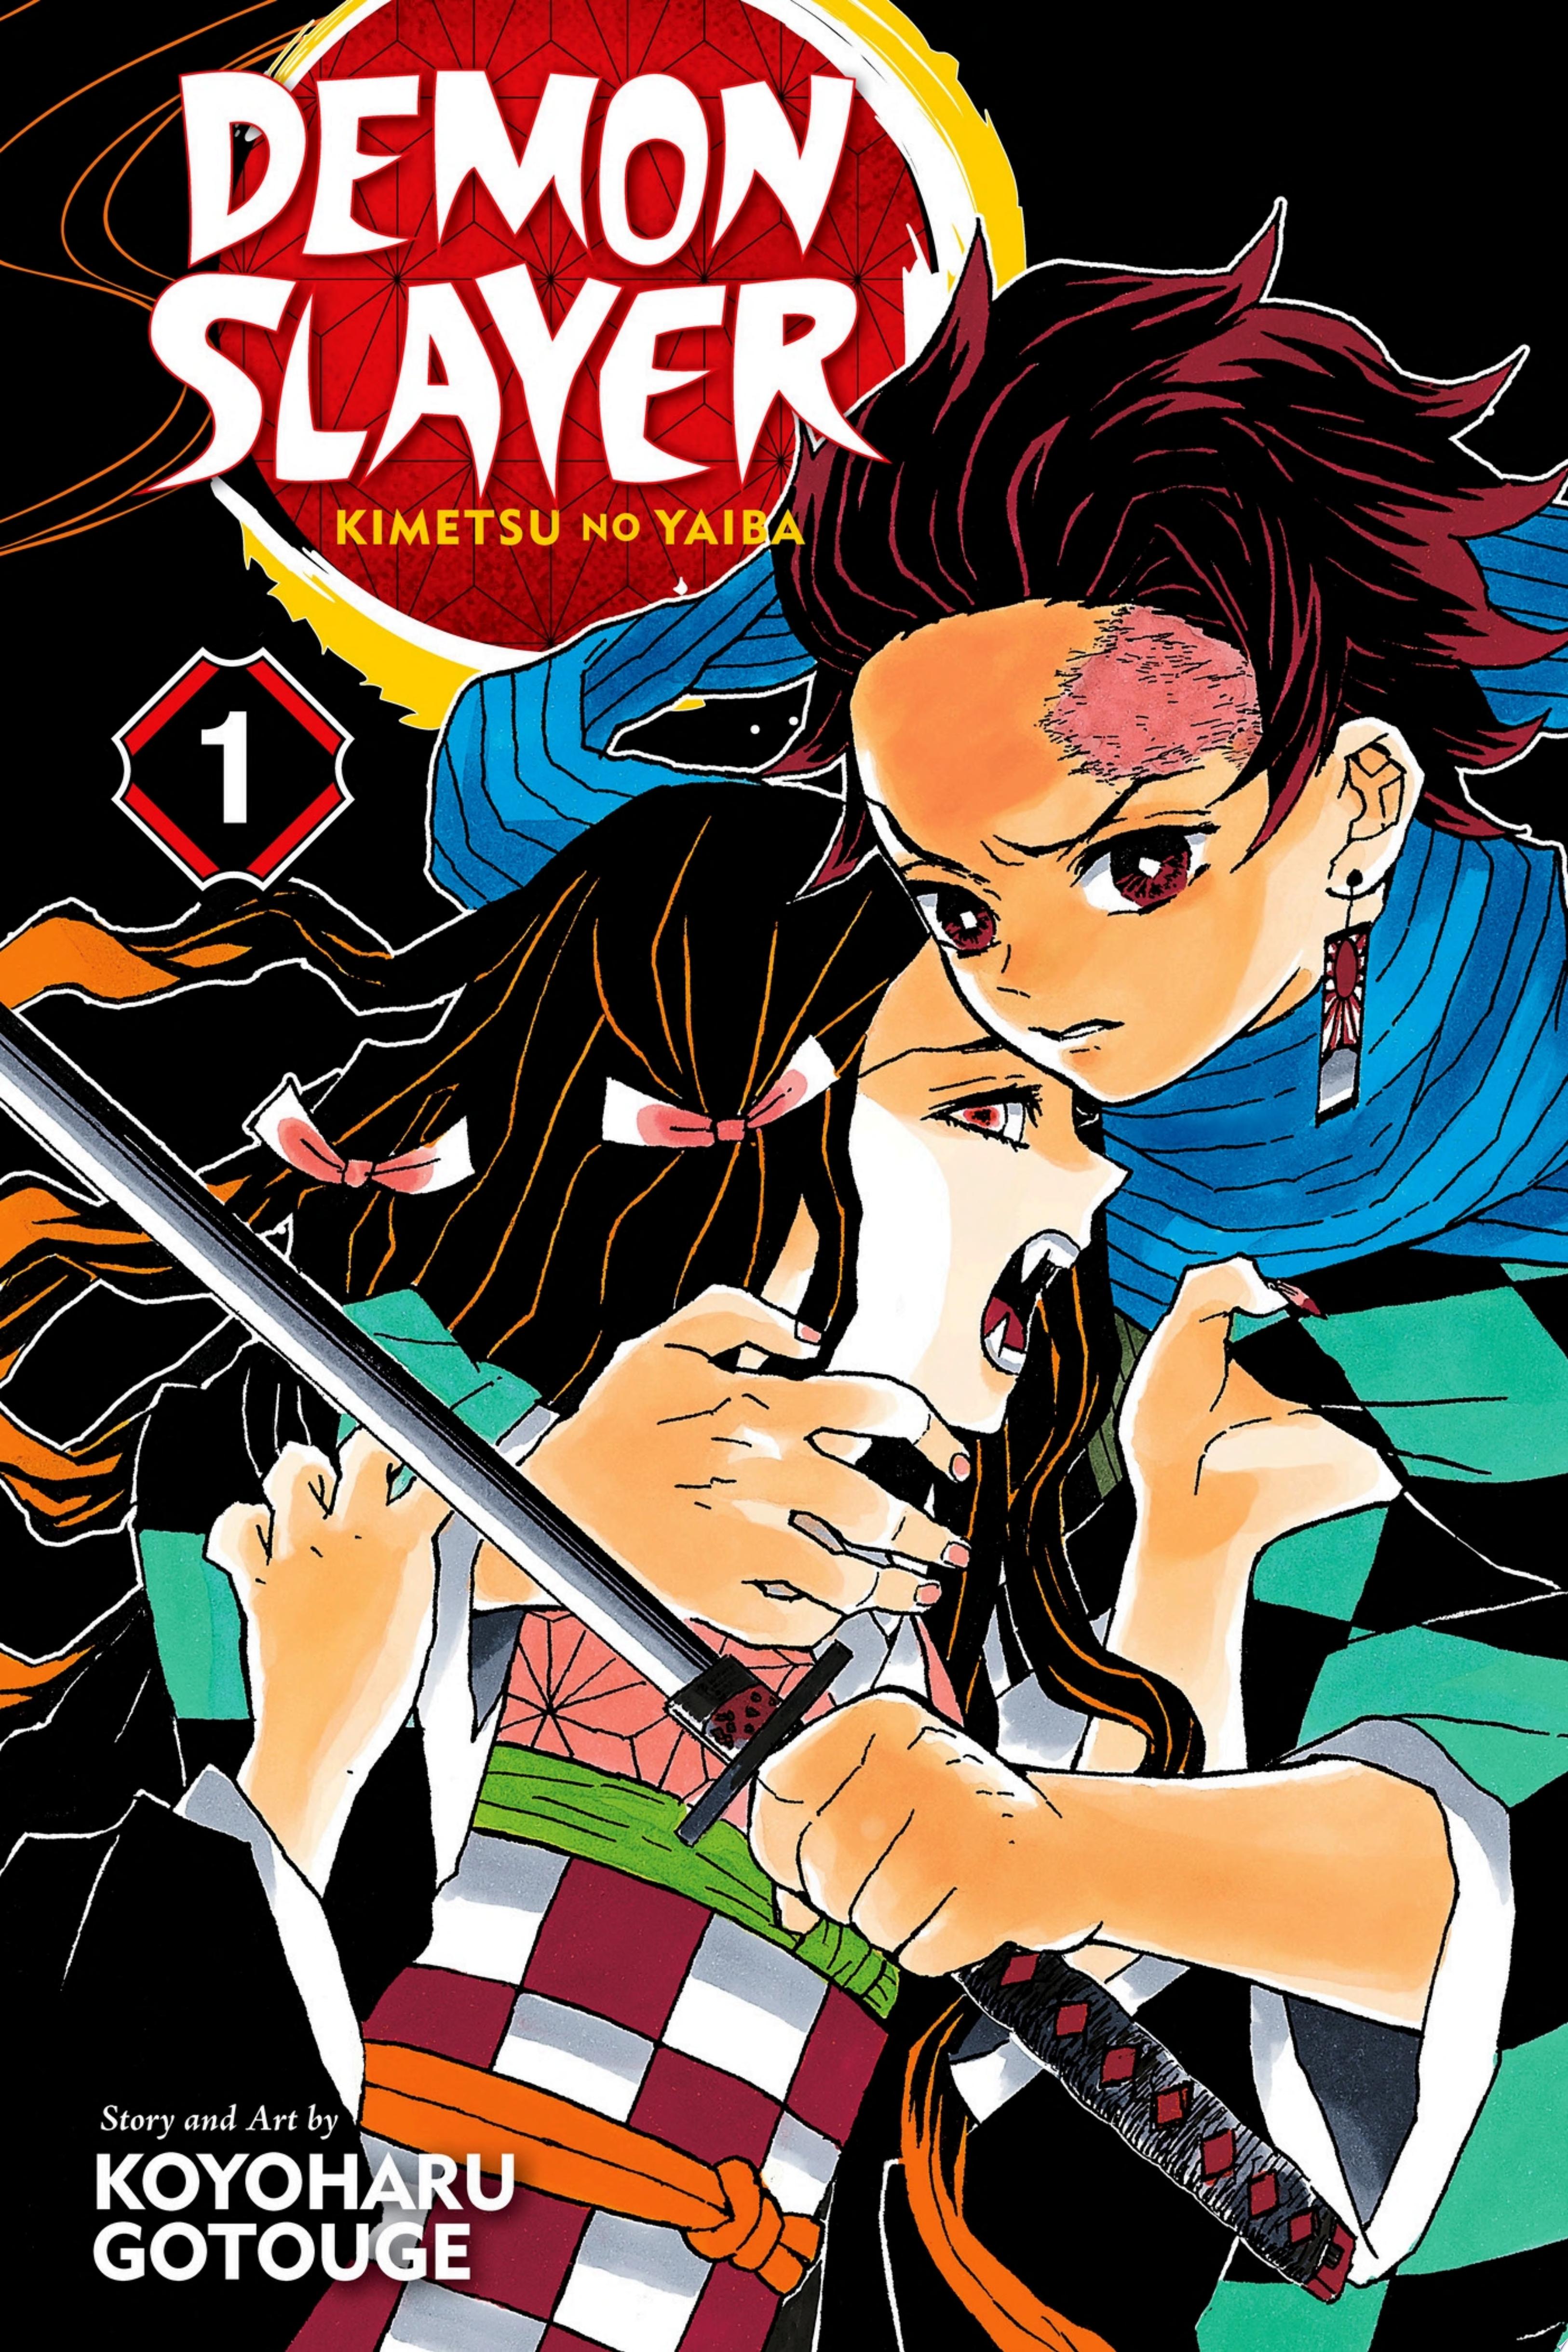 Image for "Demon Slayer: Kimetsu no Yaiba, Vol. 1"